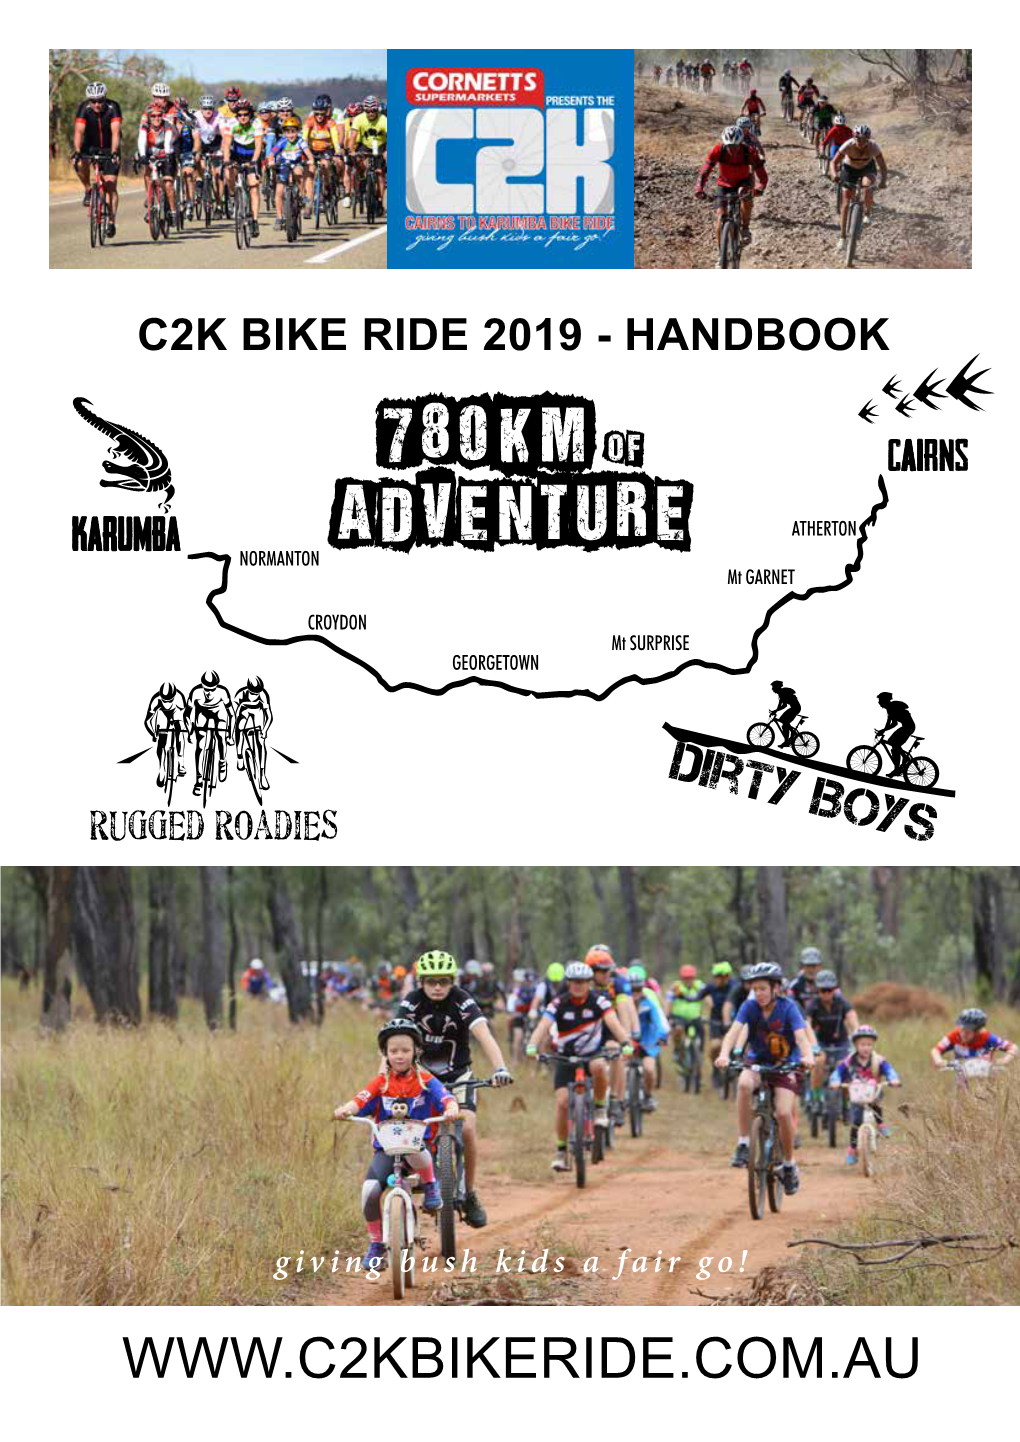 C2k Bike Ride 2019 - Handbook